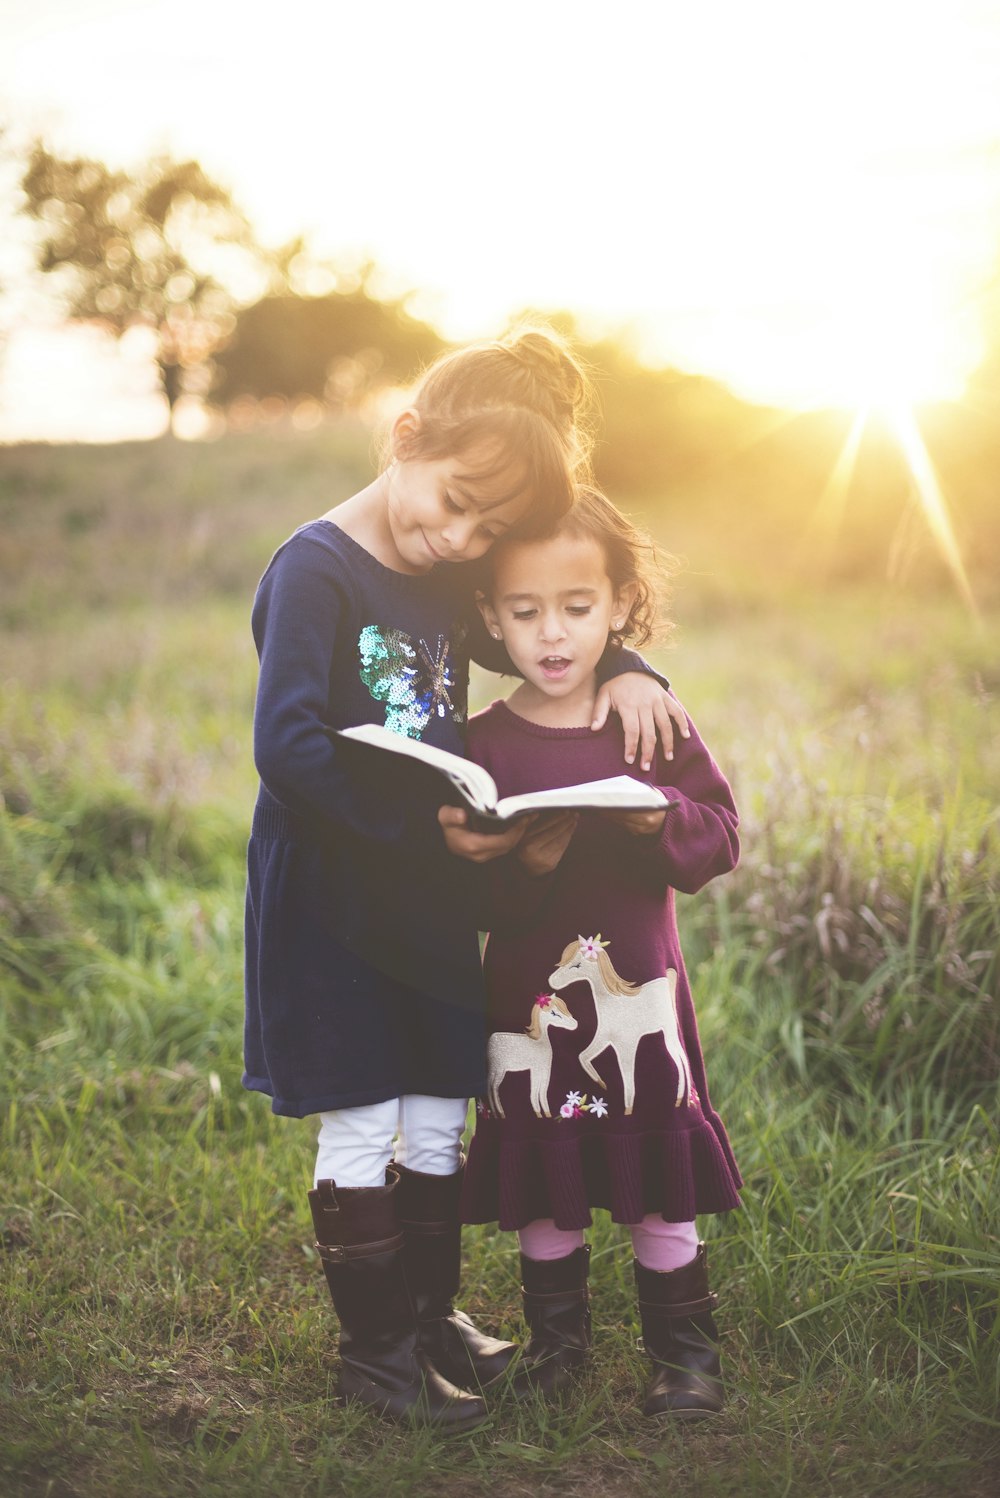 La mano izquierda de la niña se envuelve alrededor del niño pequeño mientras lee el libro durante la hora dorada